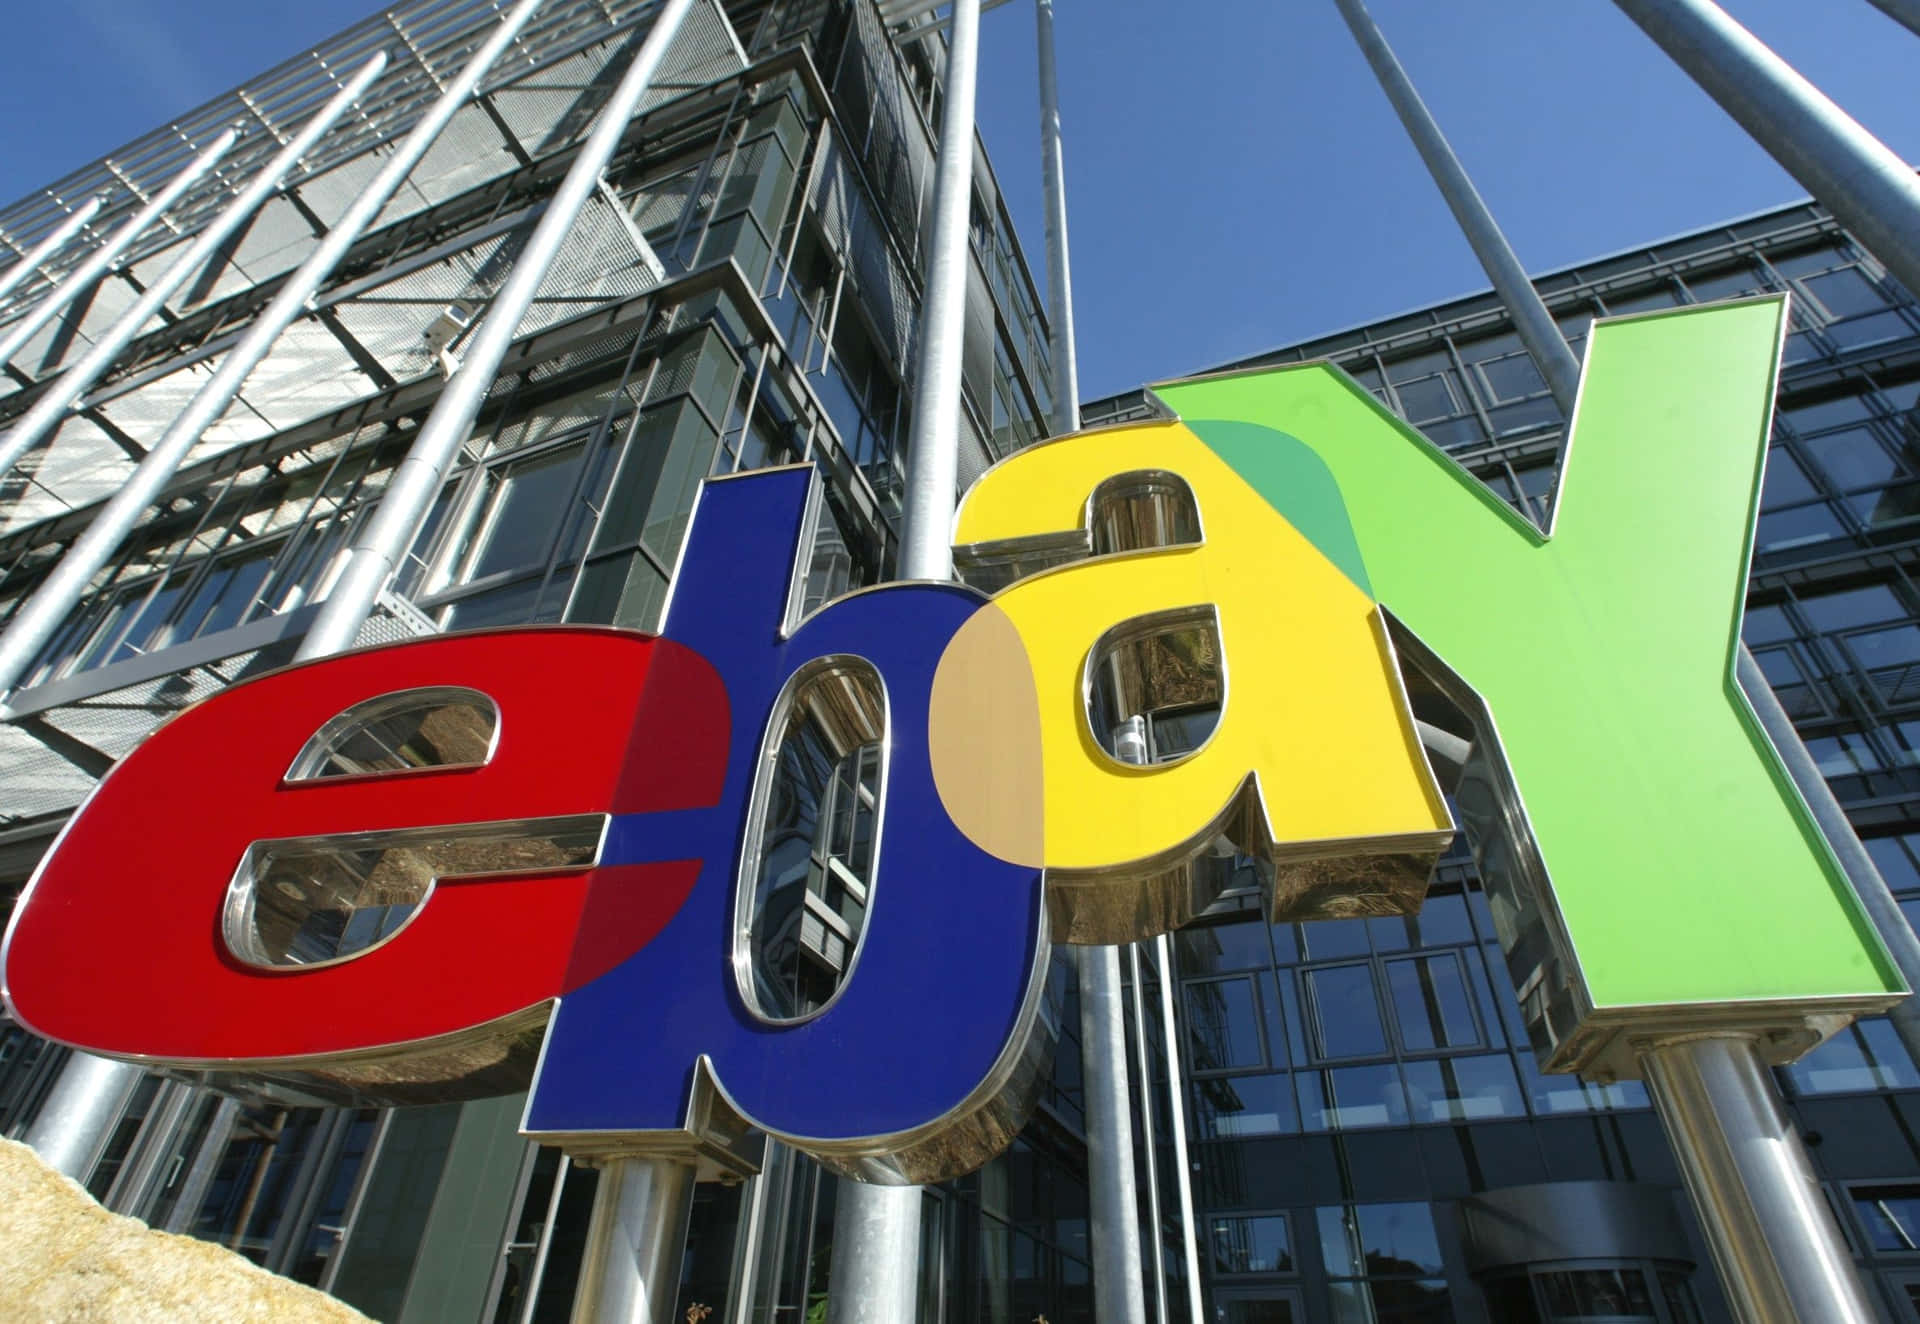 Bienvenidoa Ebay - El Mercado En Línea Líder Del Mundo.